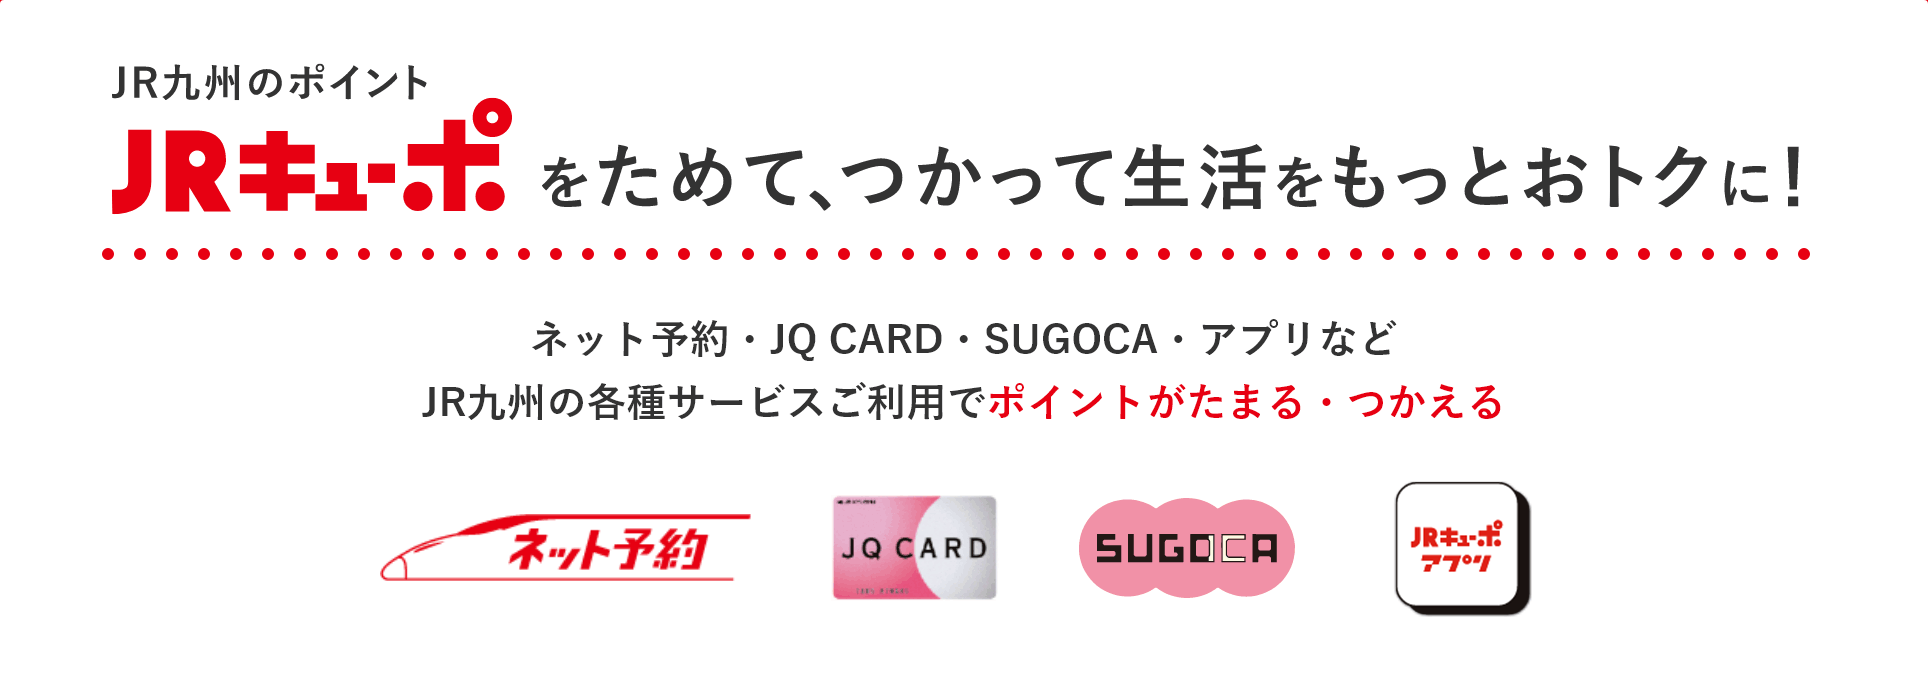 JR九州のポイント JRキューポをためて、つかって生活をもっとおトクに！ ネット予約・JQ CARD・SUGOCA・アプリなどJR九州の各種サービスご利用でポイントがたまる・つかえる